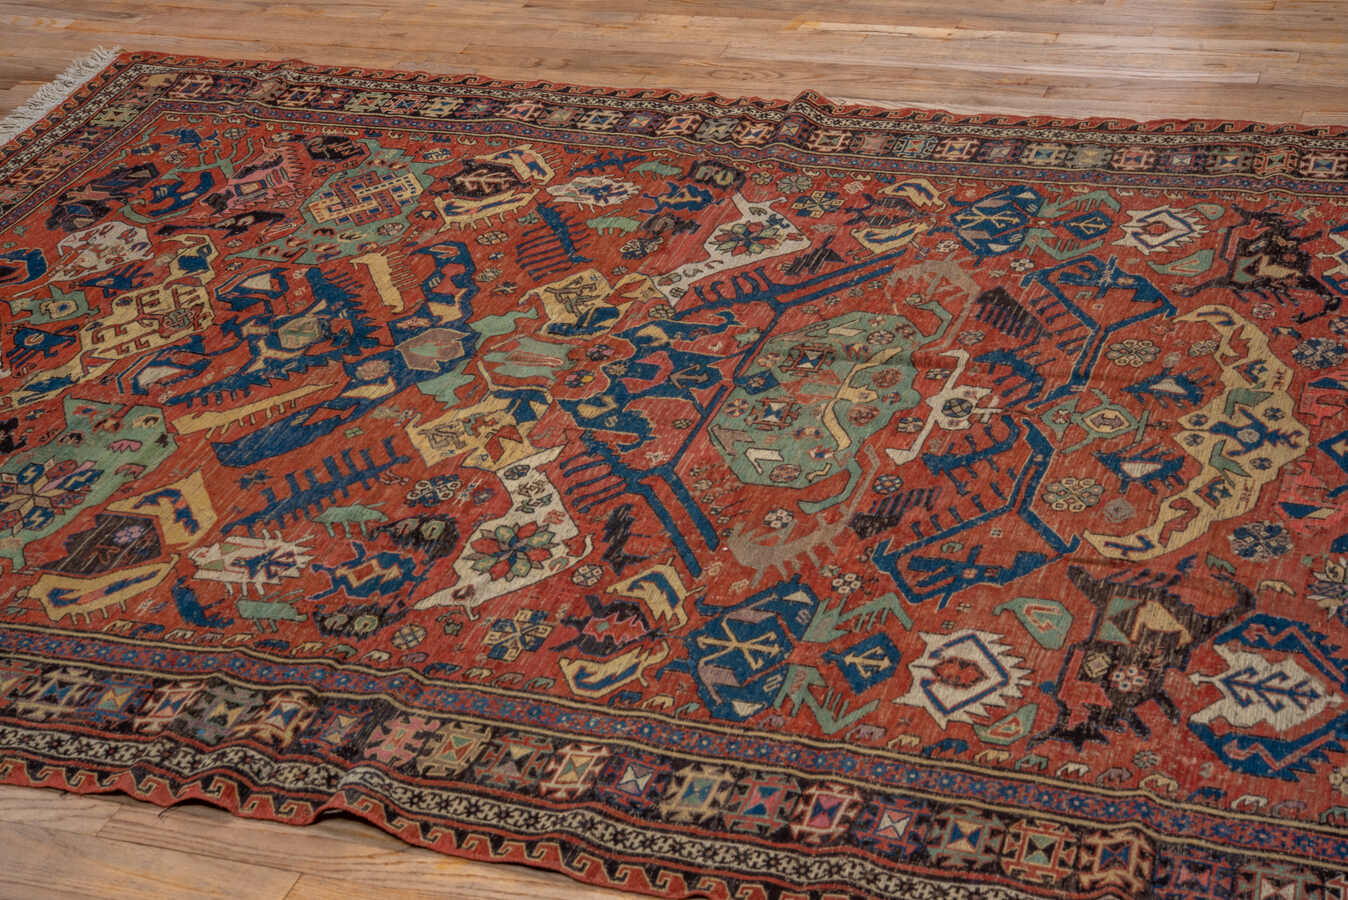 Antique soumac Carpet - # 56709